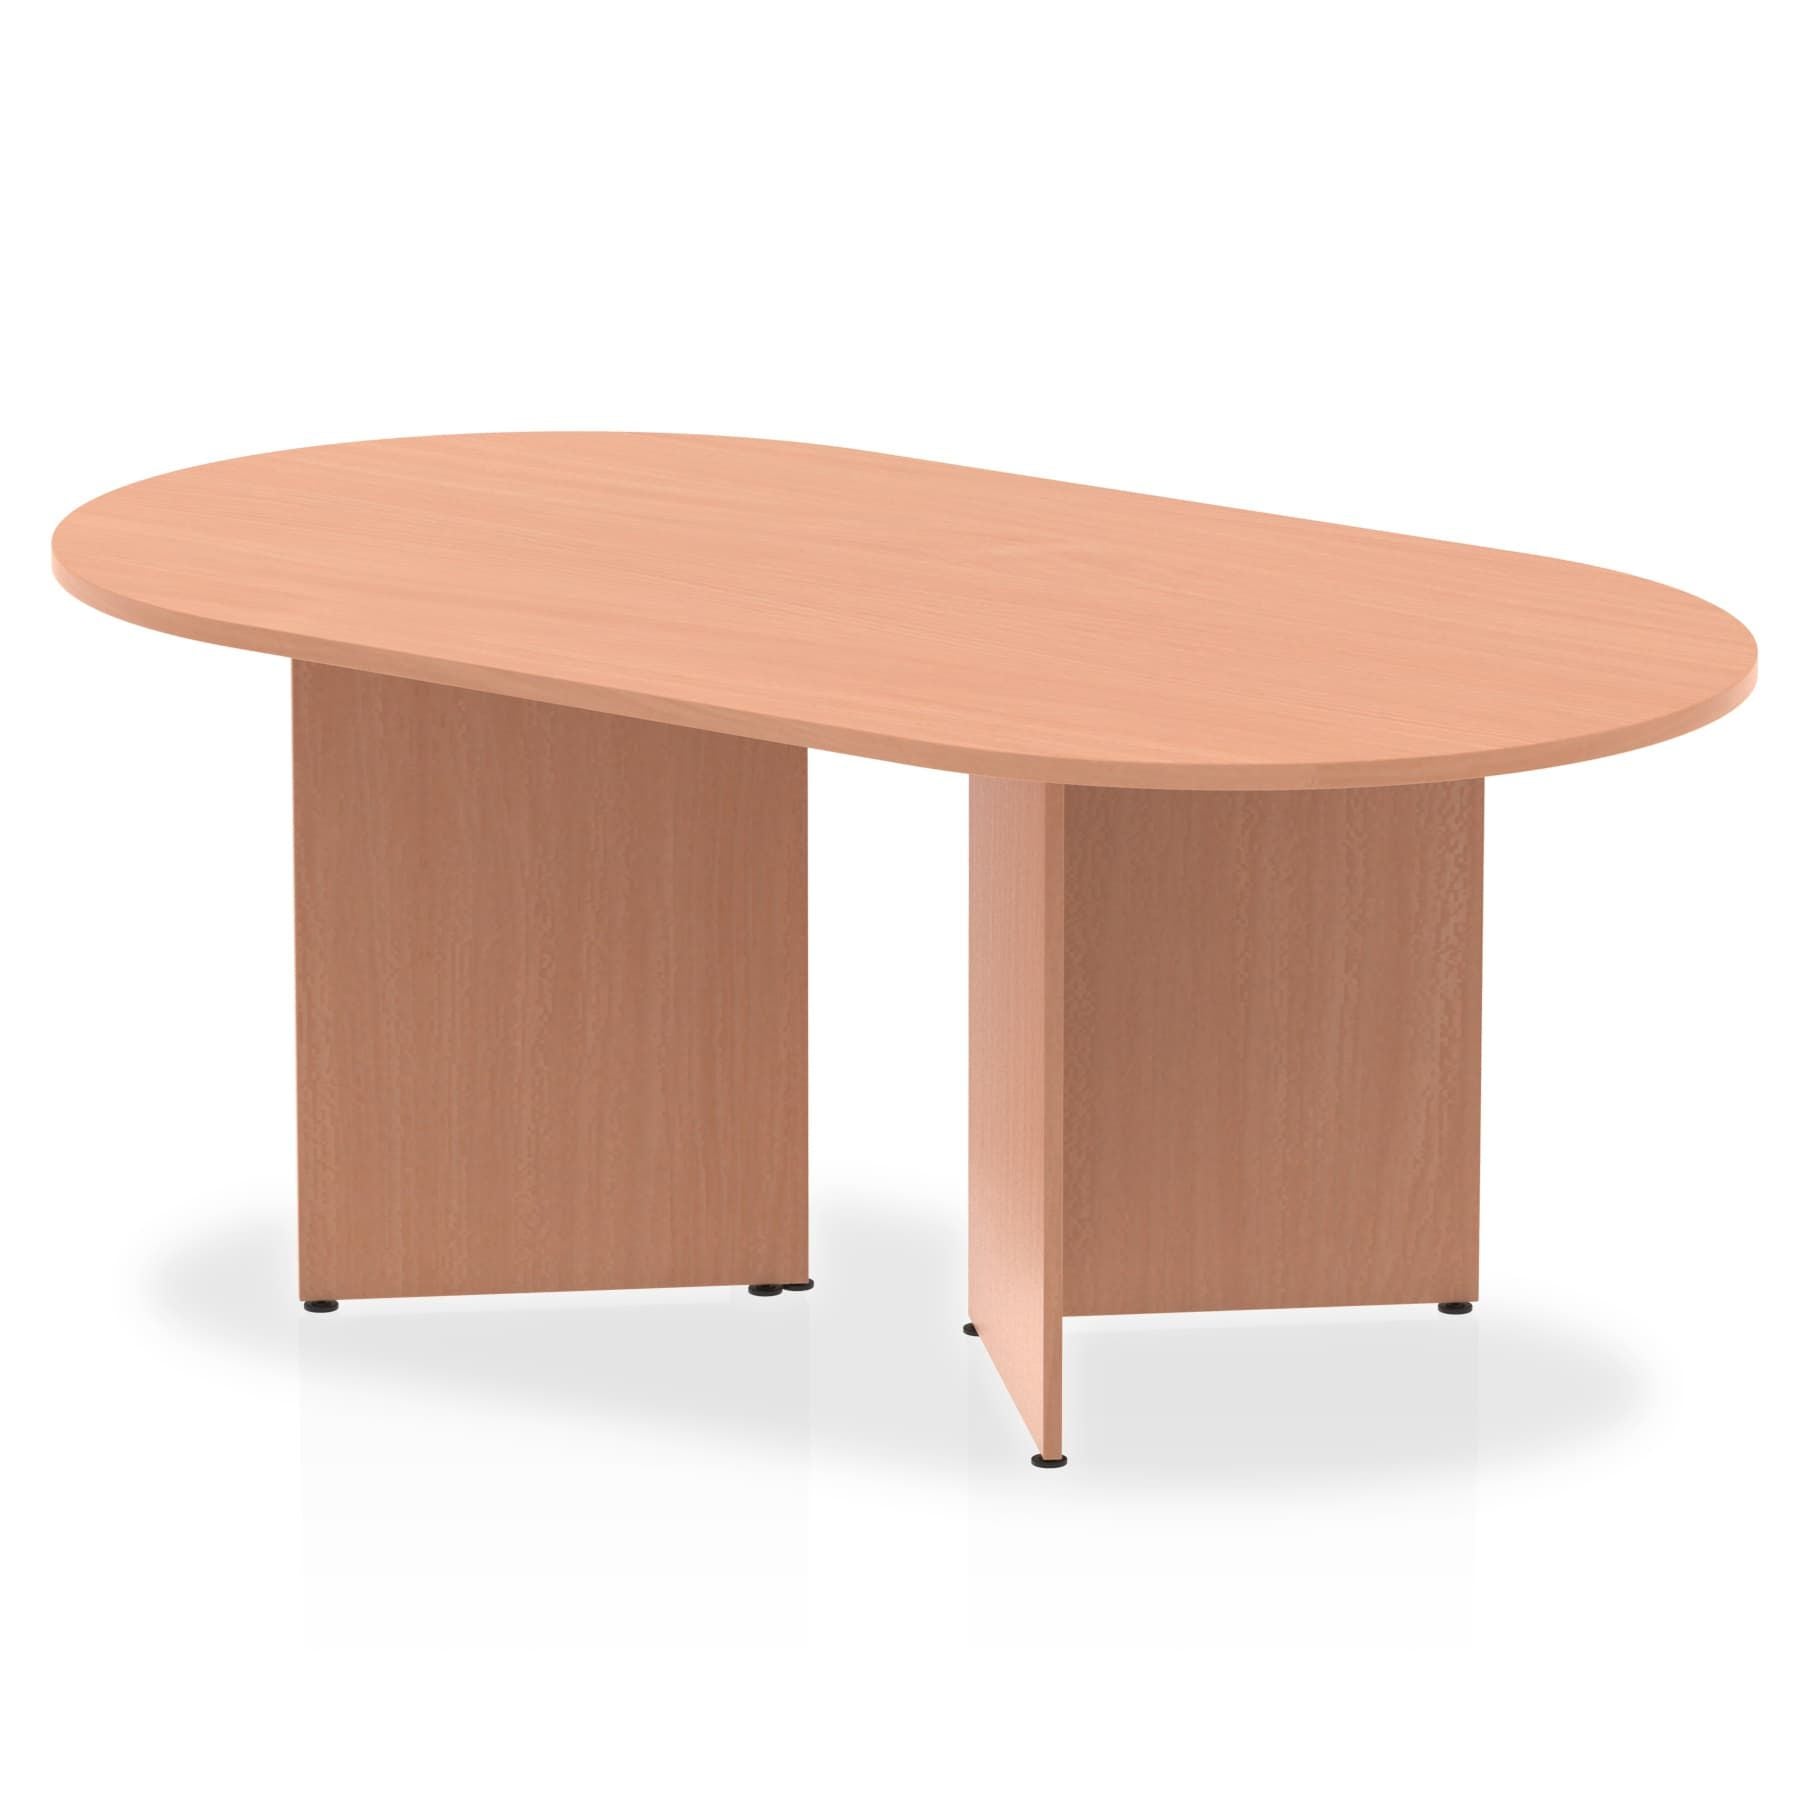 Photos - Office Desk Dynamic Office Solutions Impulse Boardroom Table Arrowhead Leg I003410 